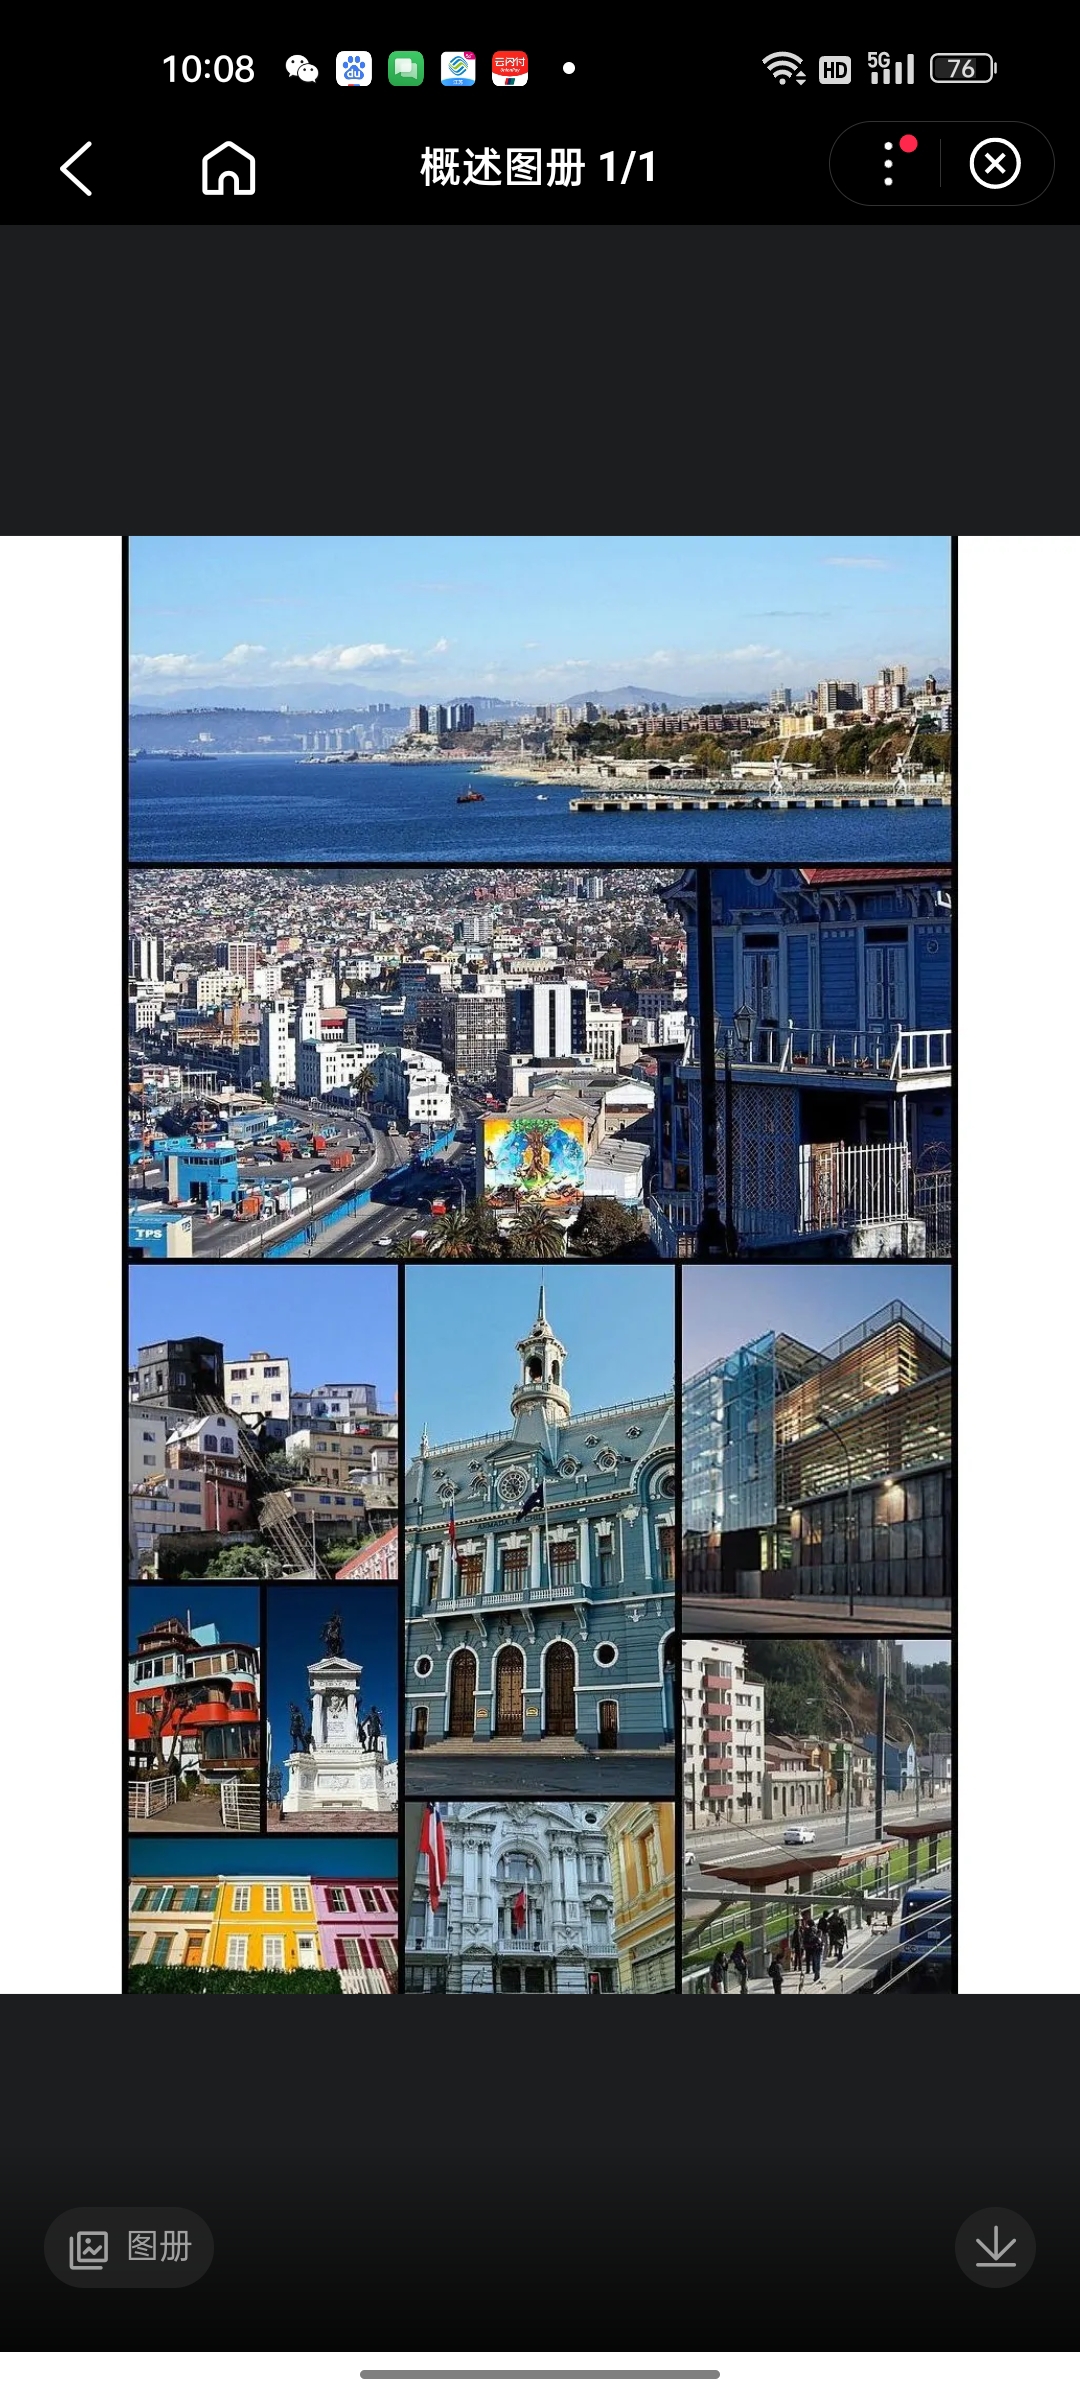 瓦尔帕莱索是南美洲太平洋东岸重要海港城市，智利第五大区帕莱索地区的首府和瓦尔帕莱索省首府。智利第二大